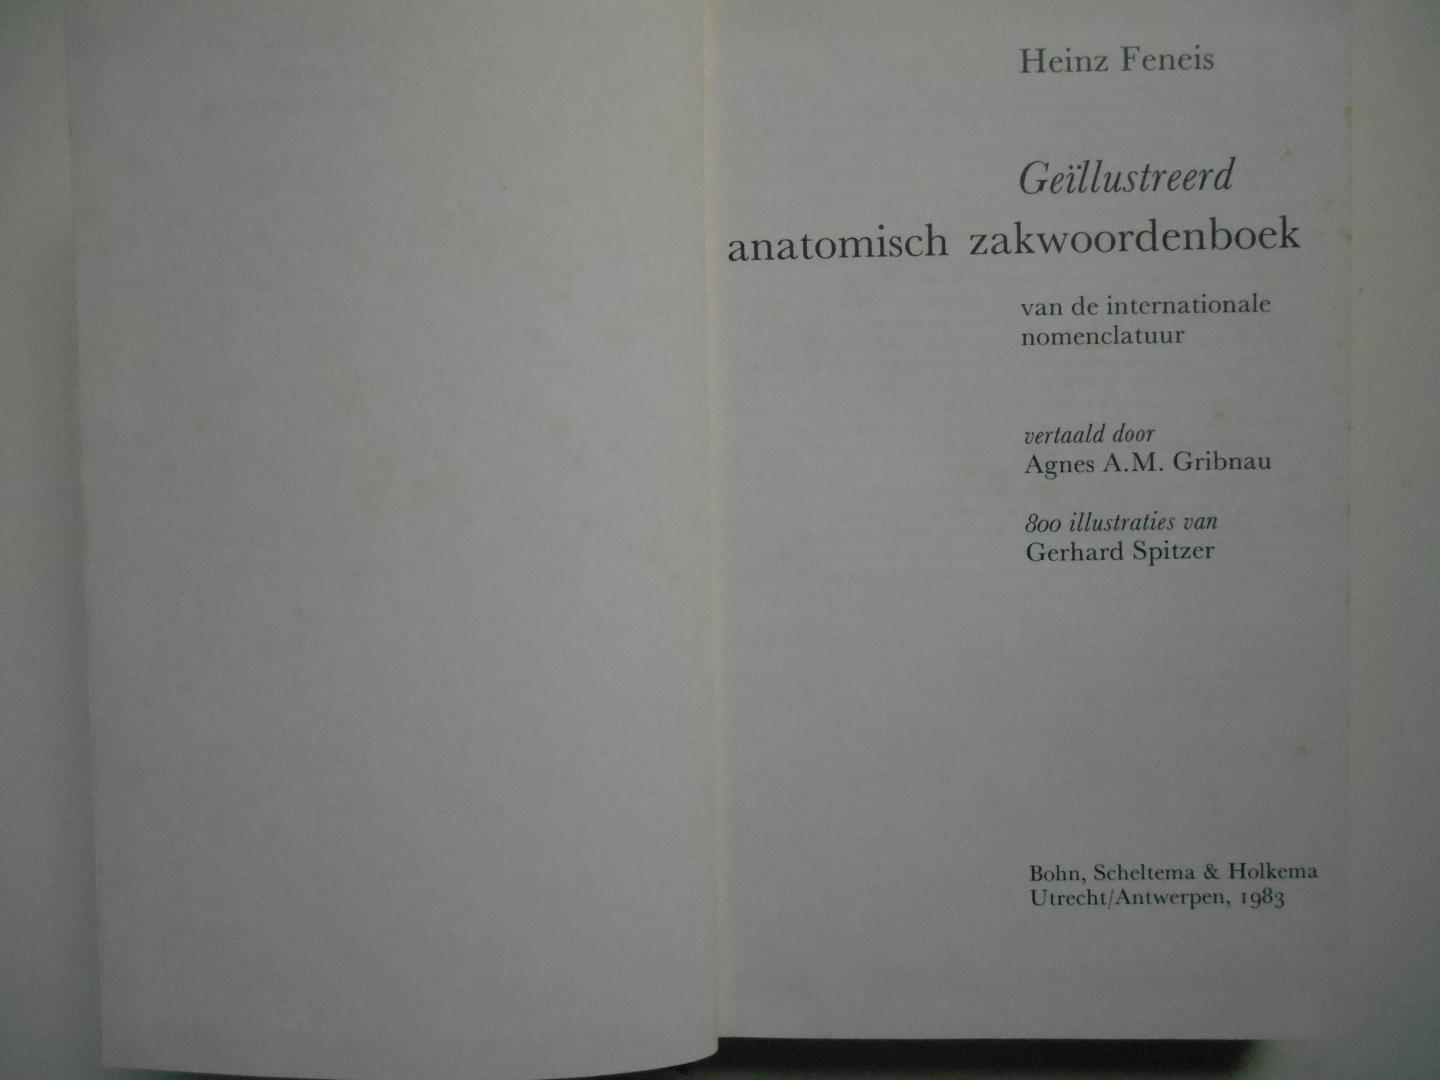 Feneis, Heinz - Geïllustreerd anatomisch zakwoordenboek van de internationale nomenclatuur